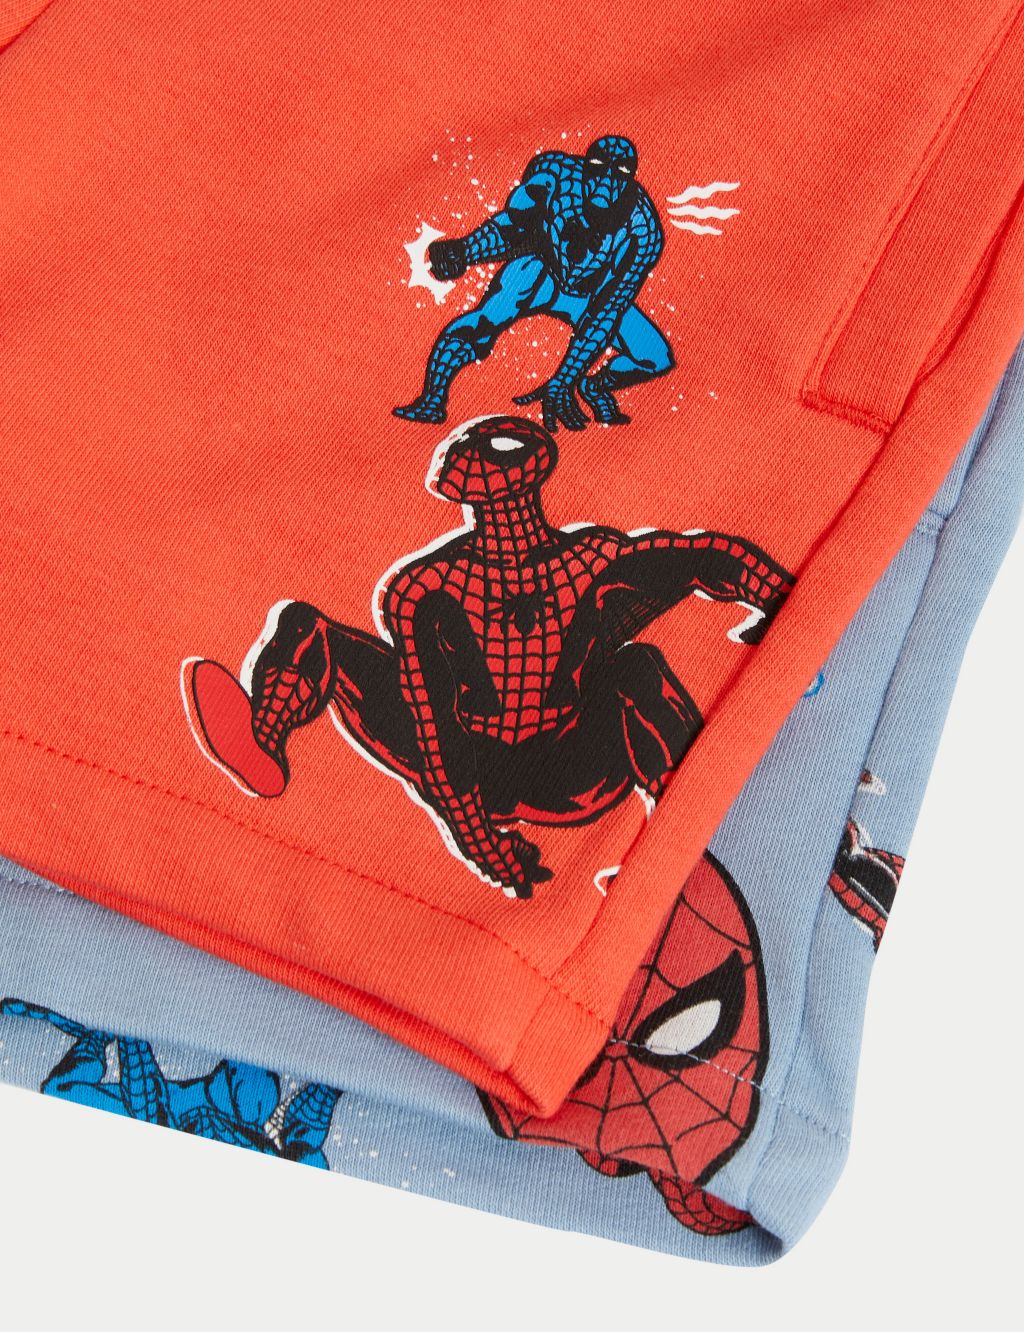 Spiderman Underwear, Mens Spiderman Underwear, Spider Sense Danger Alert  Briefs